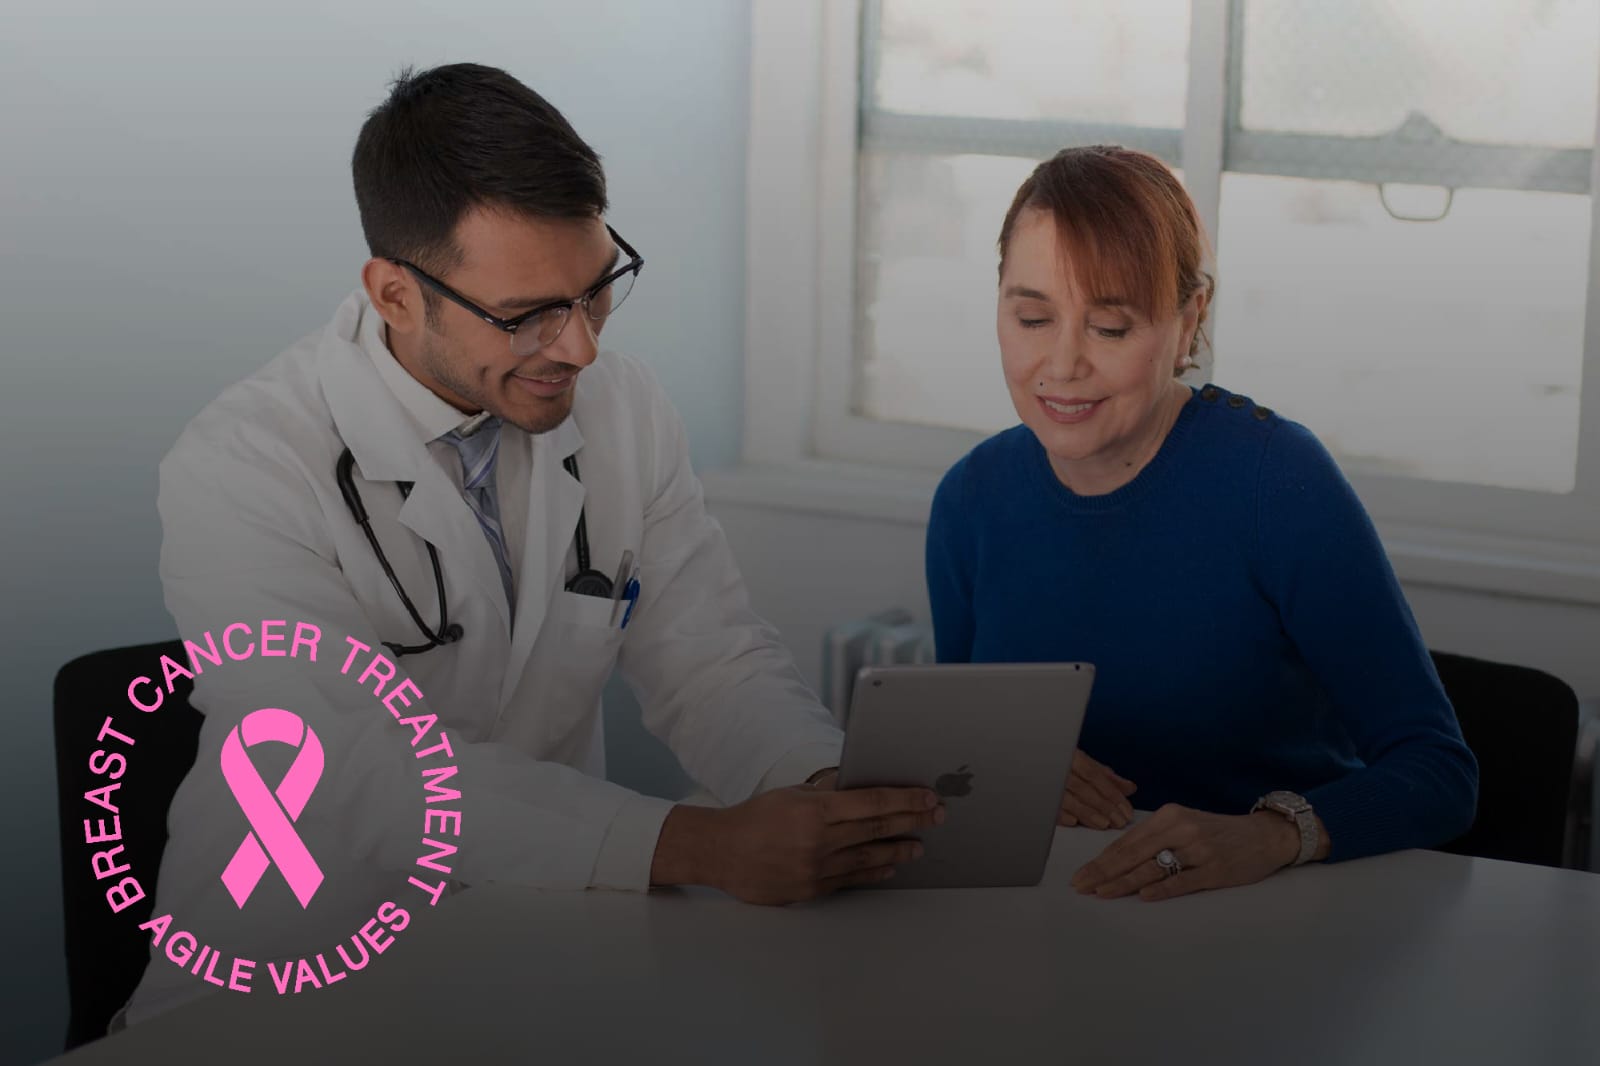 القيمة المرنة الأولى من هندسة البرمجيات لعلاج سرطان الثدي - التركيز على الأفراد وتفاعلاتهم أكثر من العمليات المتبعة والأدوات المستخدمة